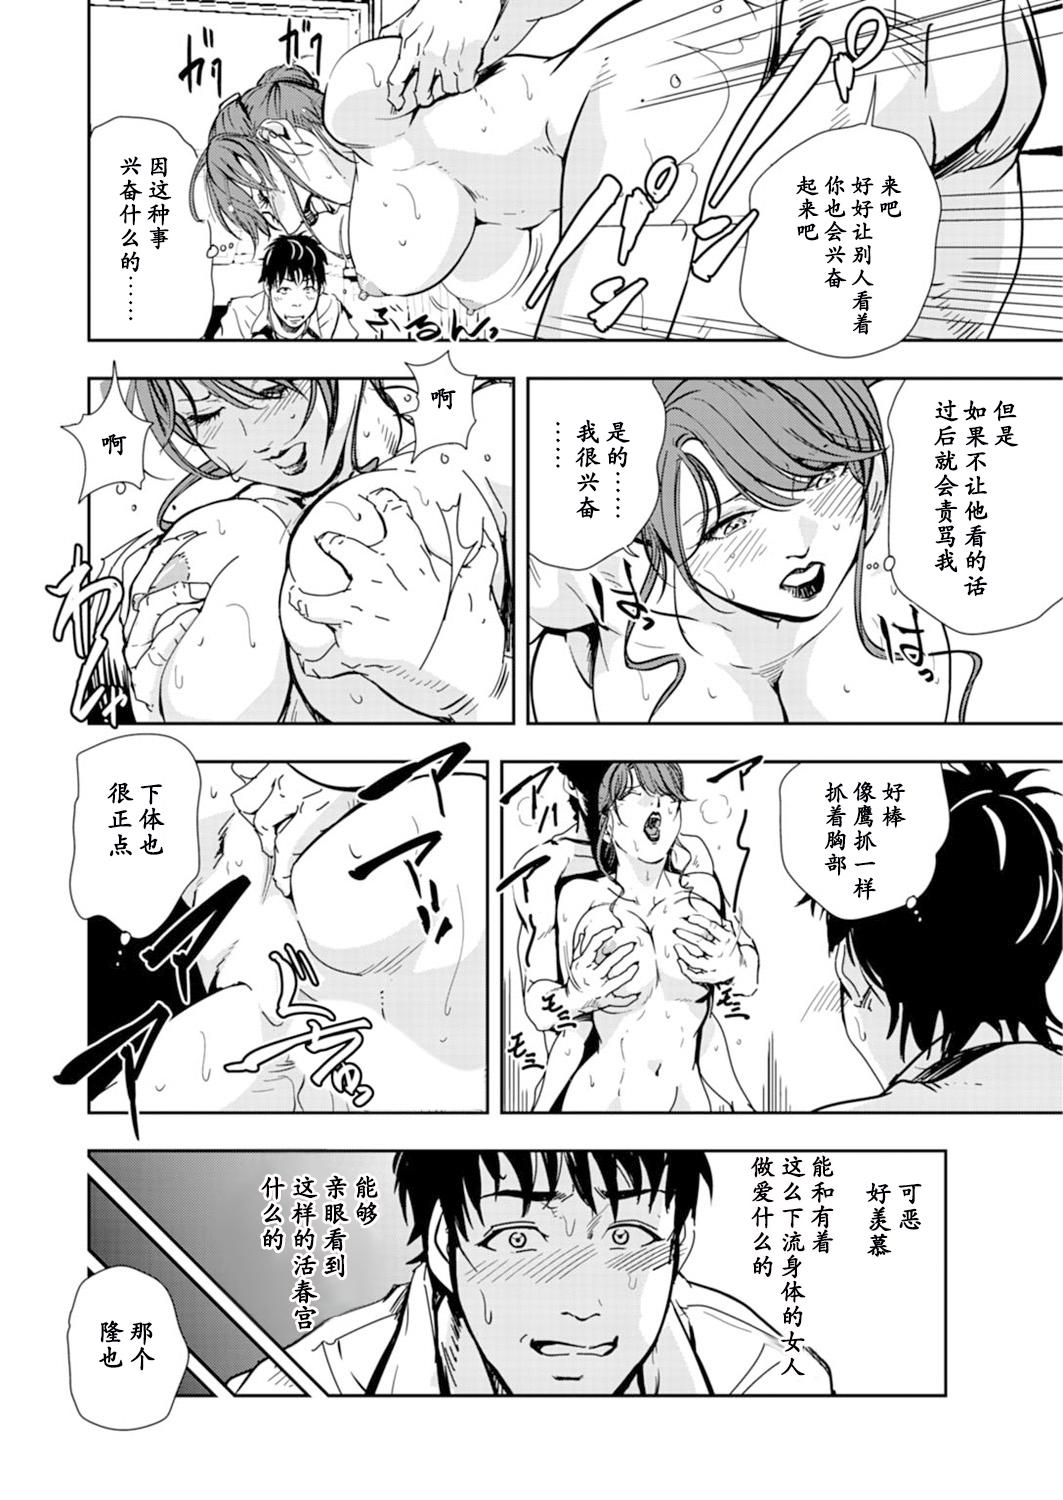 Master Nikuhisyo Yukiko chapter 53 【不可视汉化】 Licking - Page 12